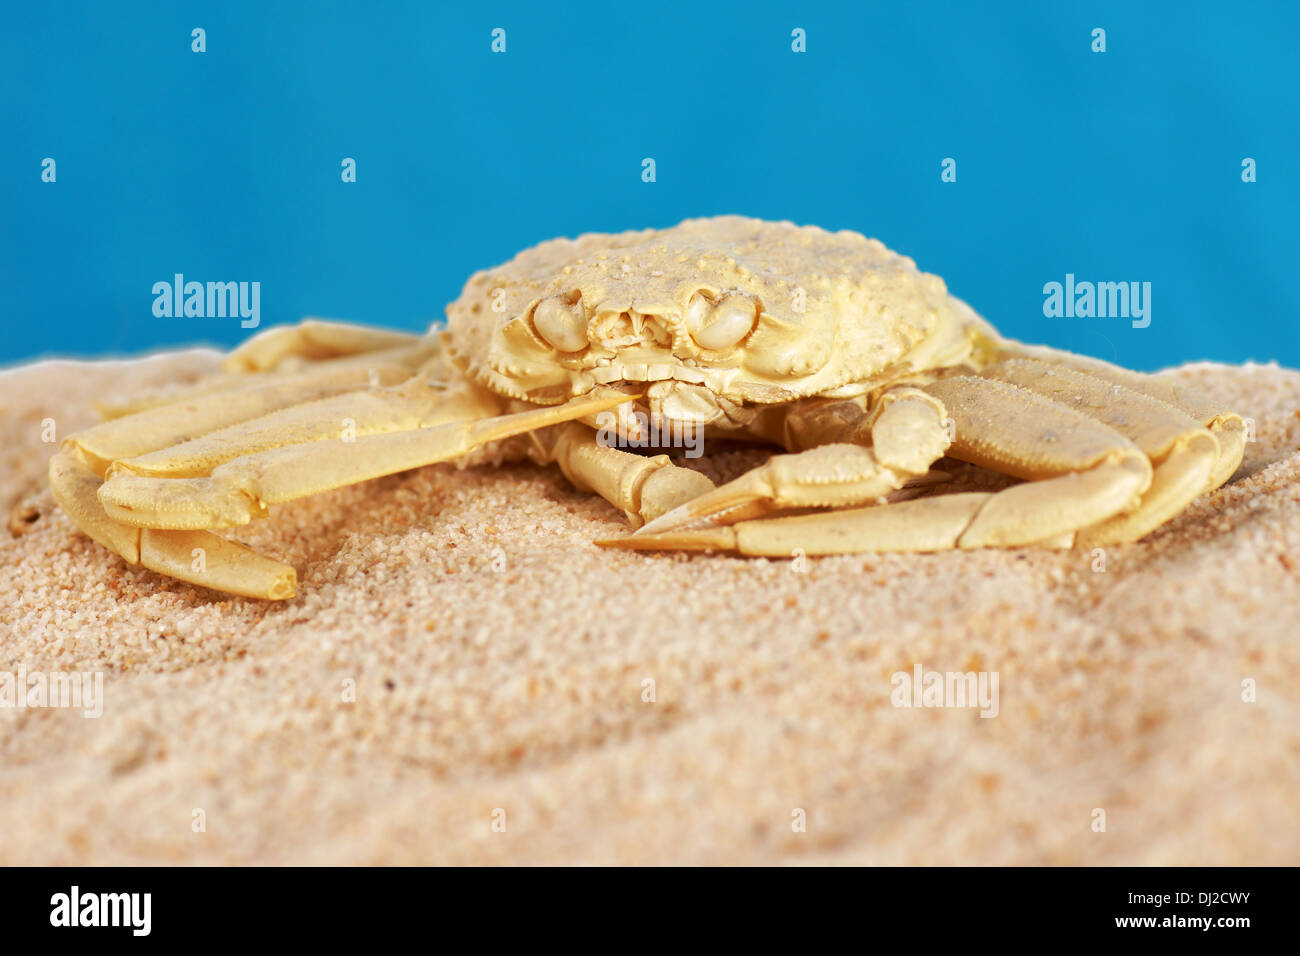 Crab exoskeleton on the sandy beach Stock Photo